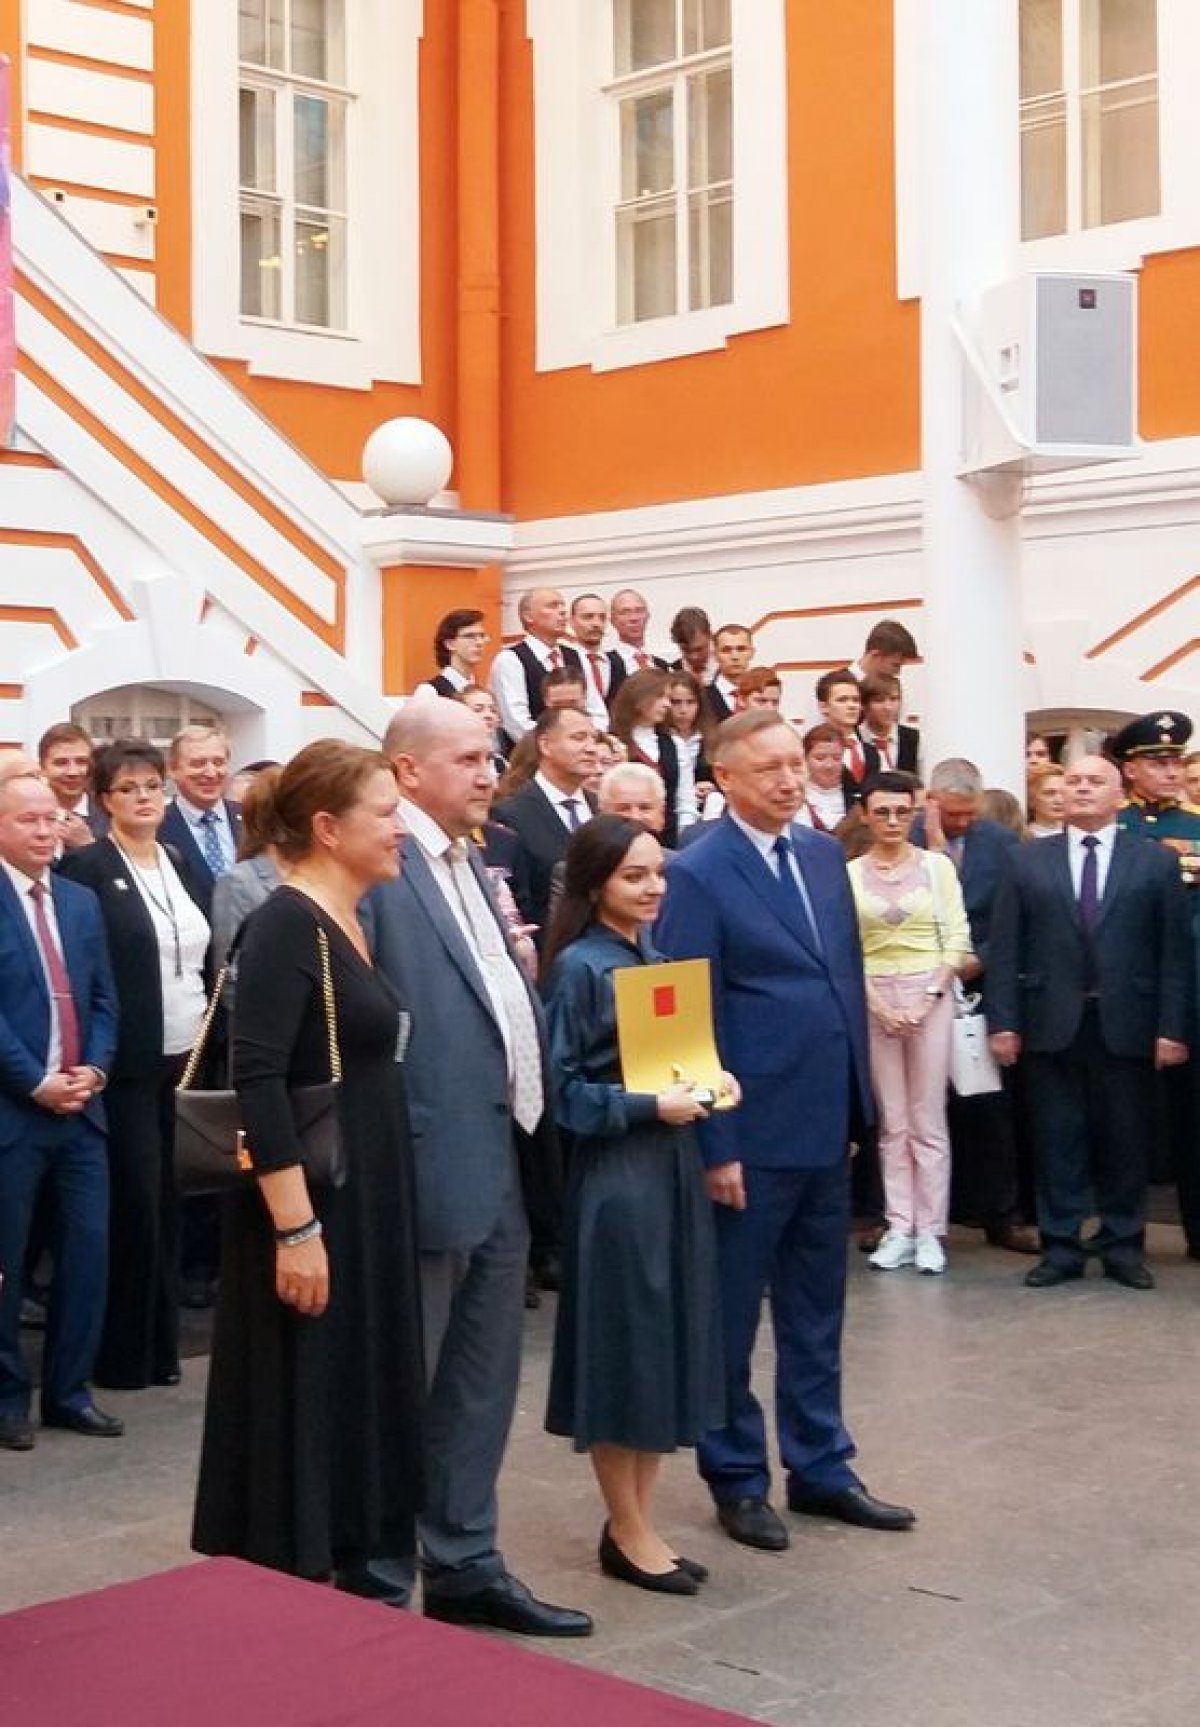 27 июня в Петропавловской крепости состоялось XVII Ежегодная церемония чествования лучших выпускников вузов Санкт-Петербурга